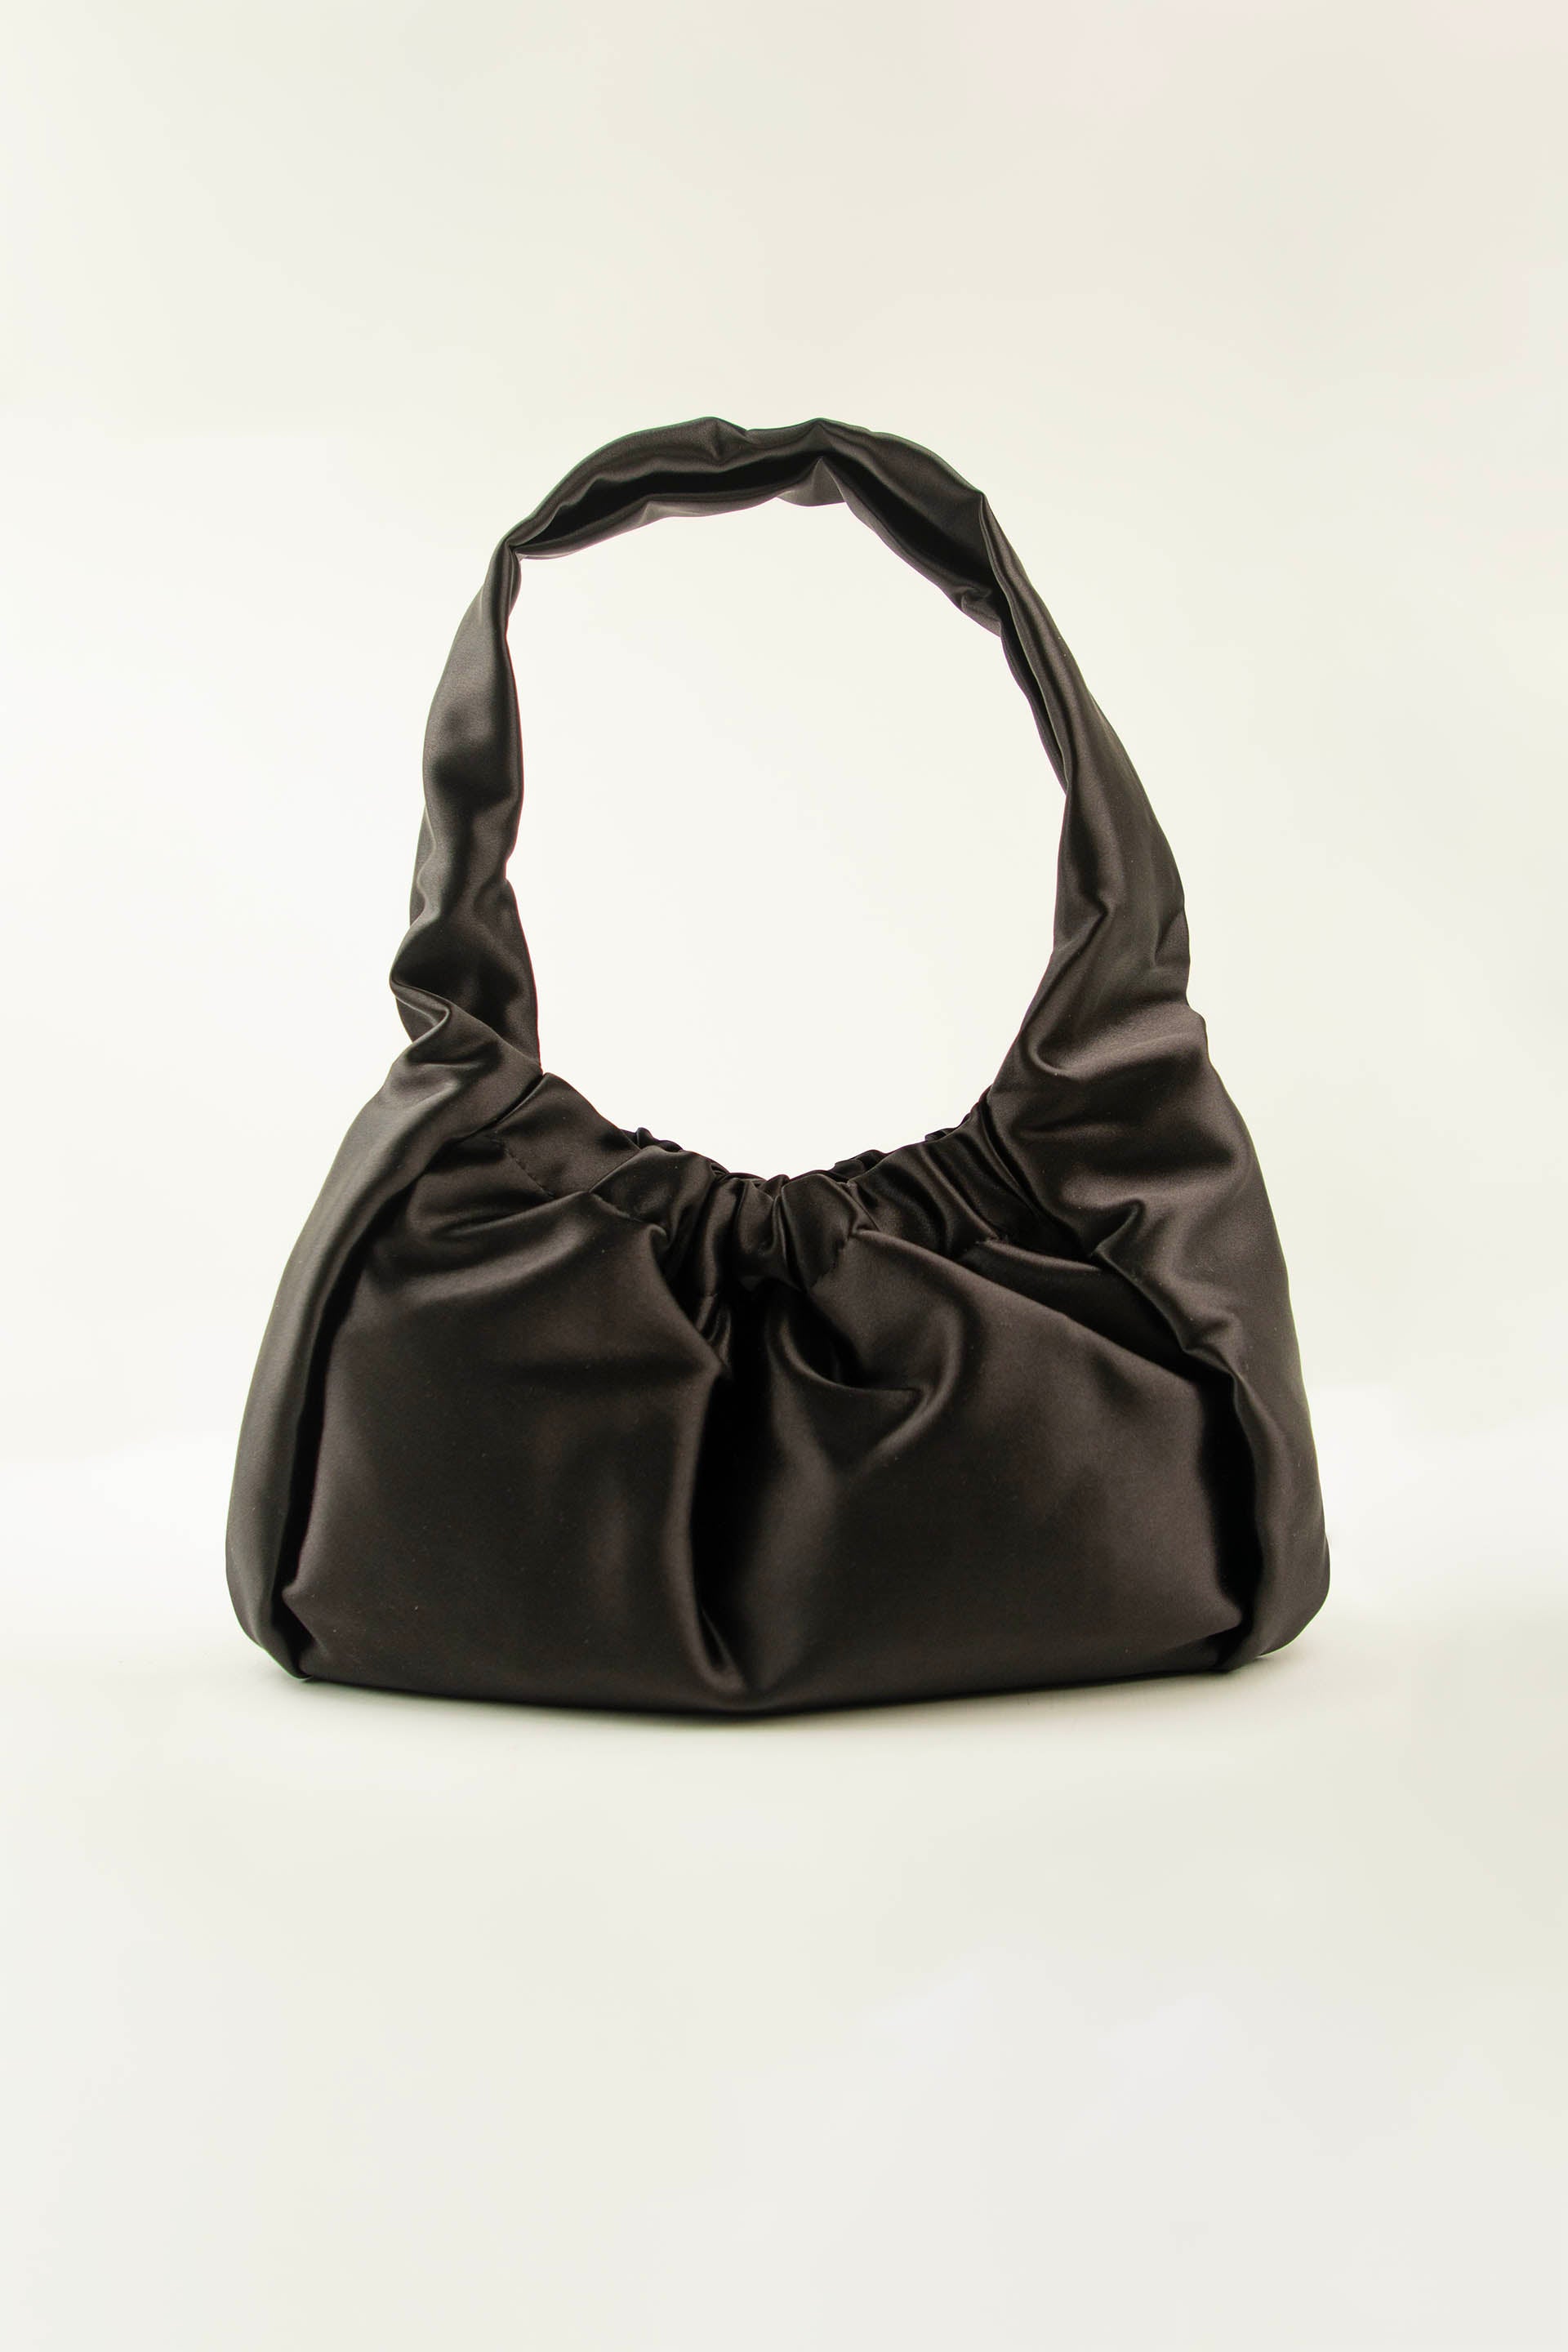 Buy Best Women Handbags Online | ONE Purses for Women